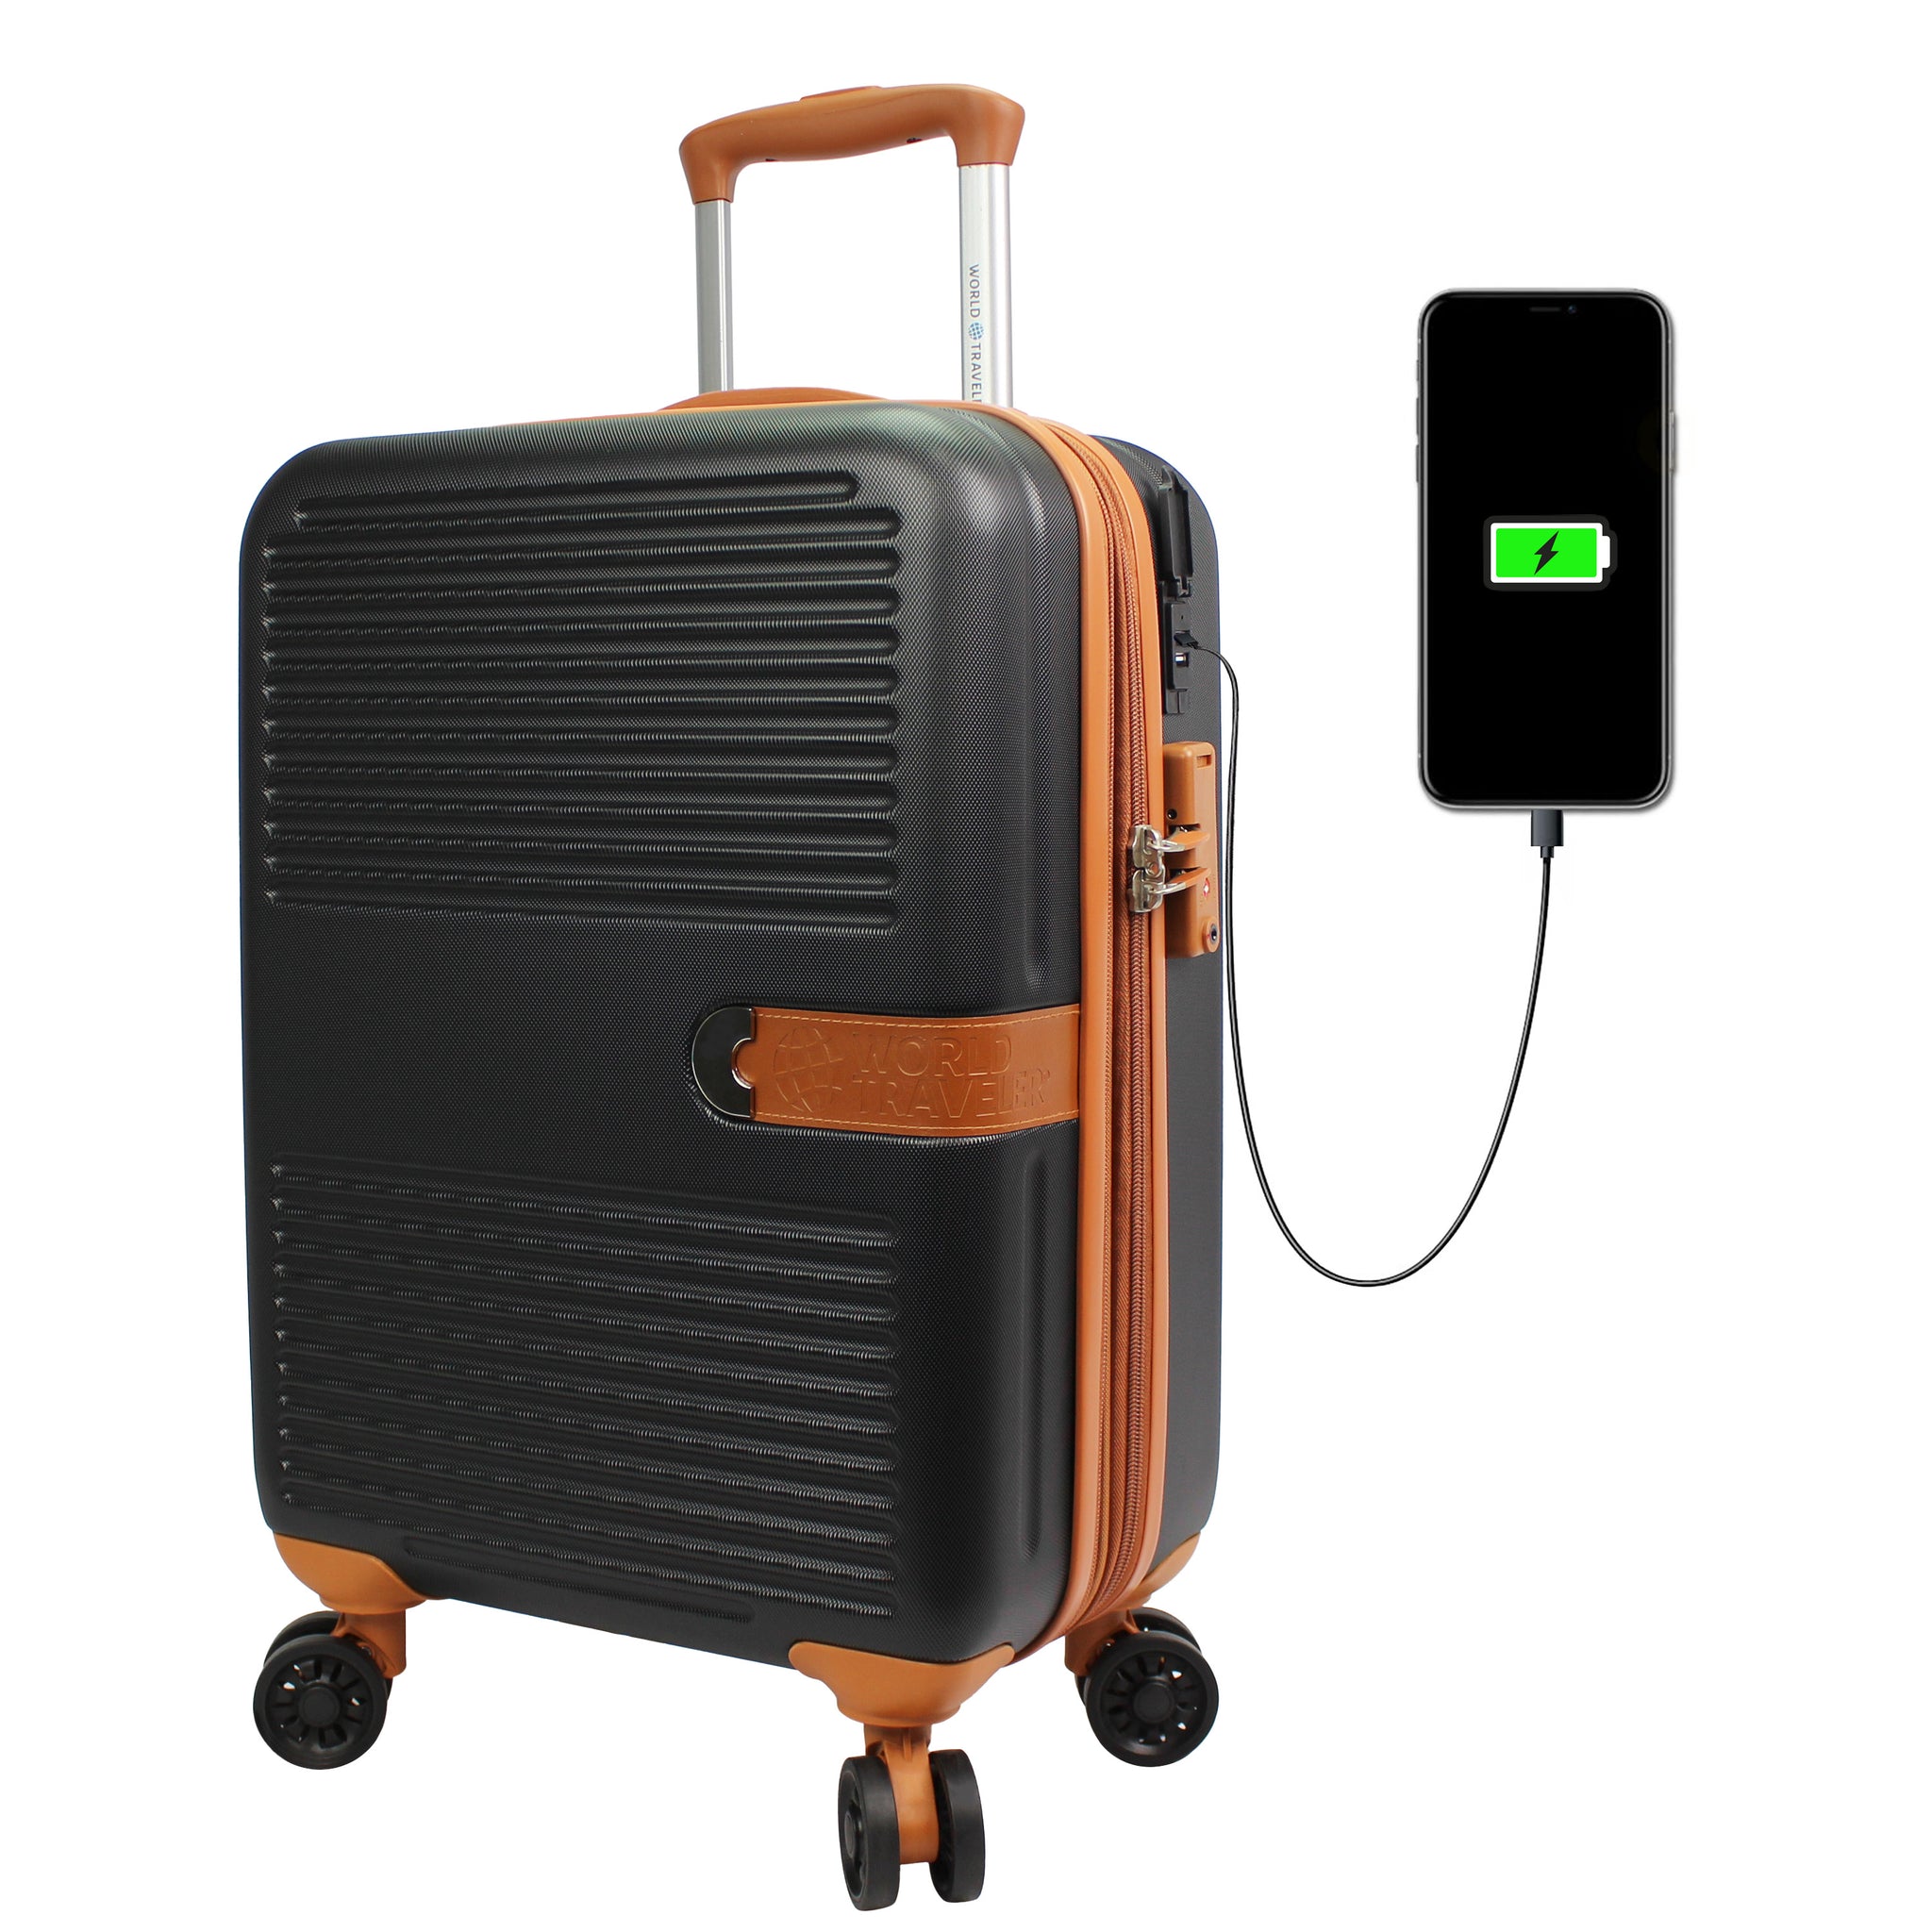 World Traveler Garland Hardside 3-Piece Luggage Set With USB Port